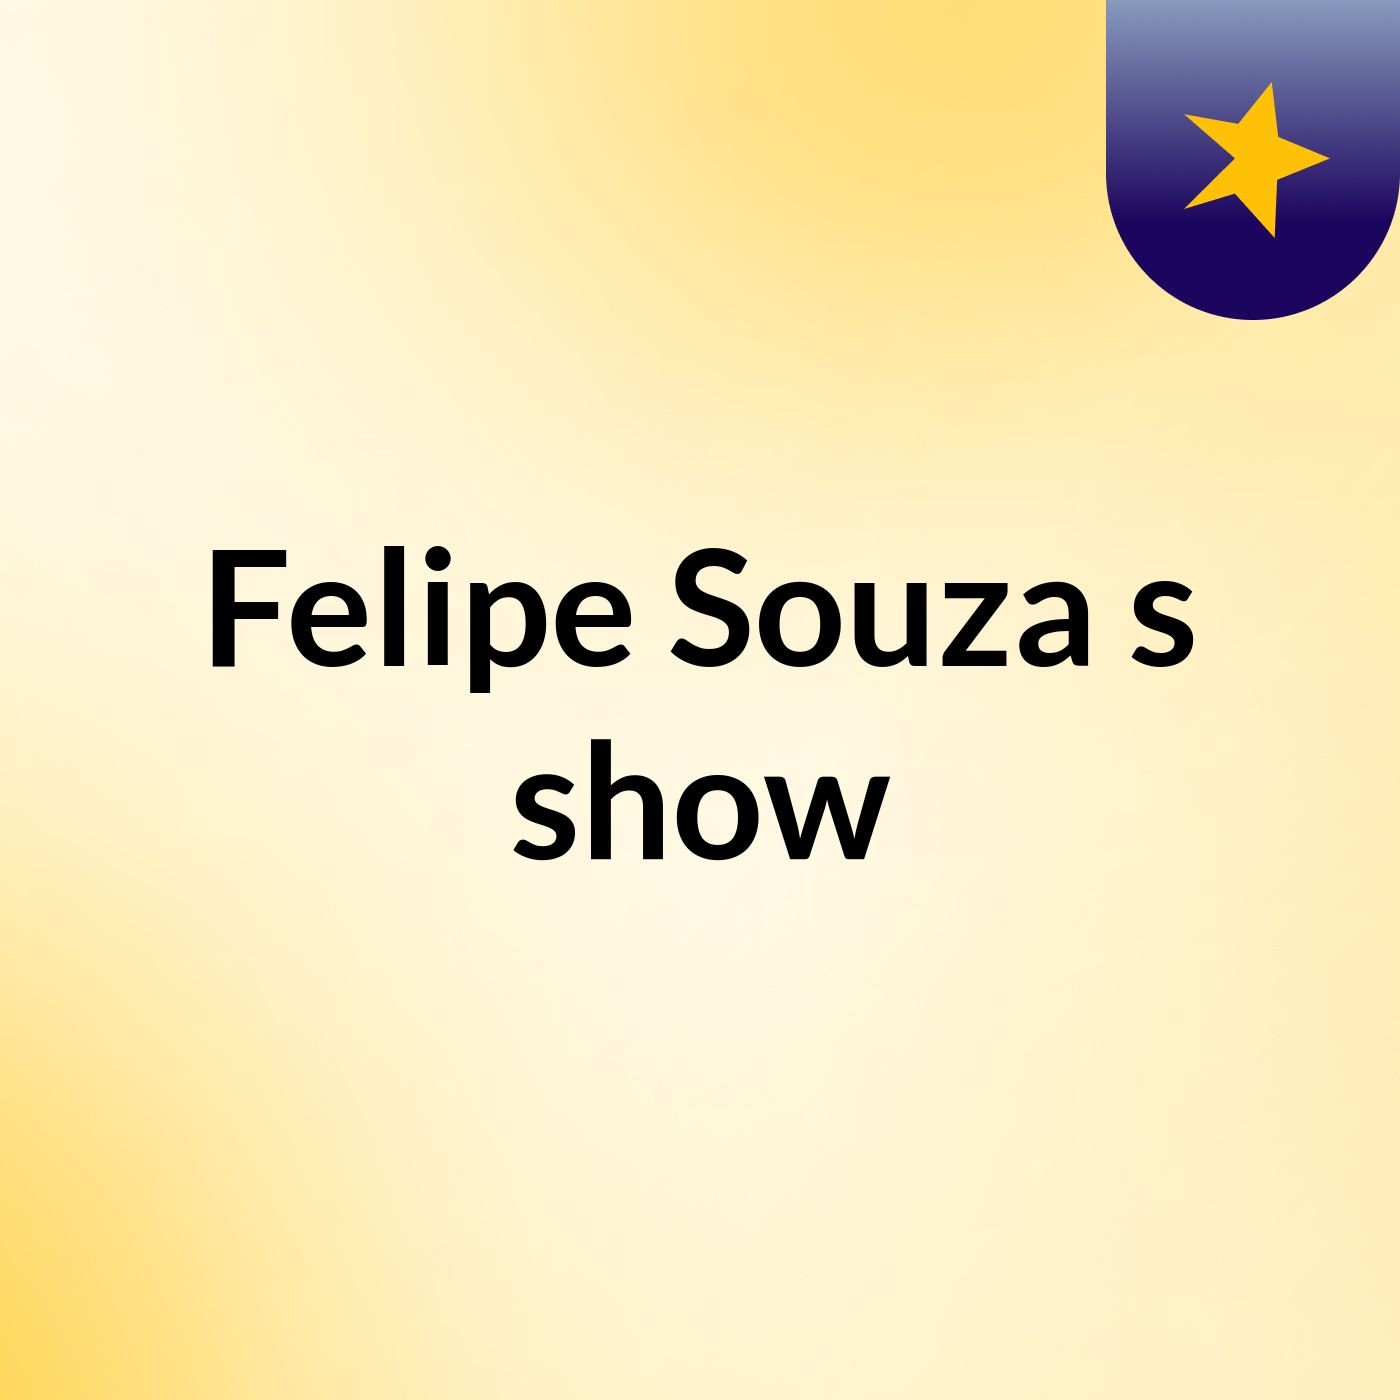 Felipe Souza's show